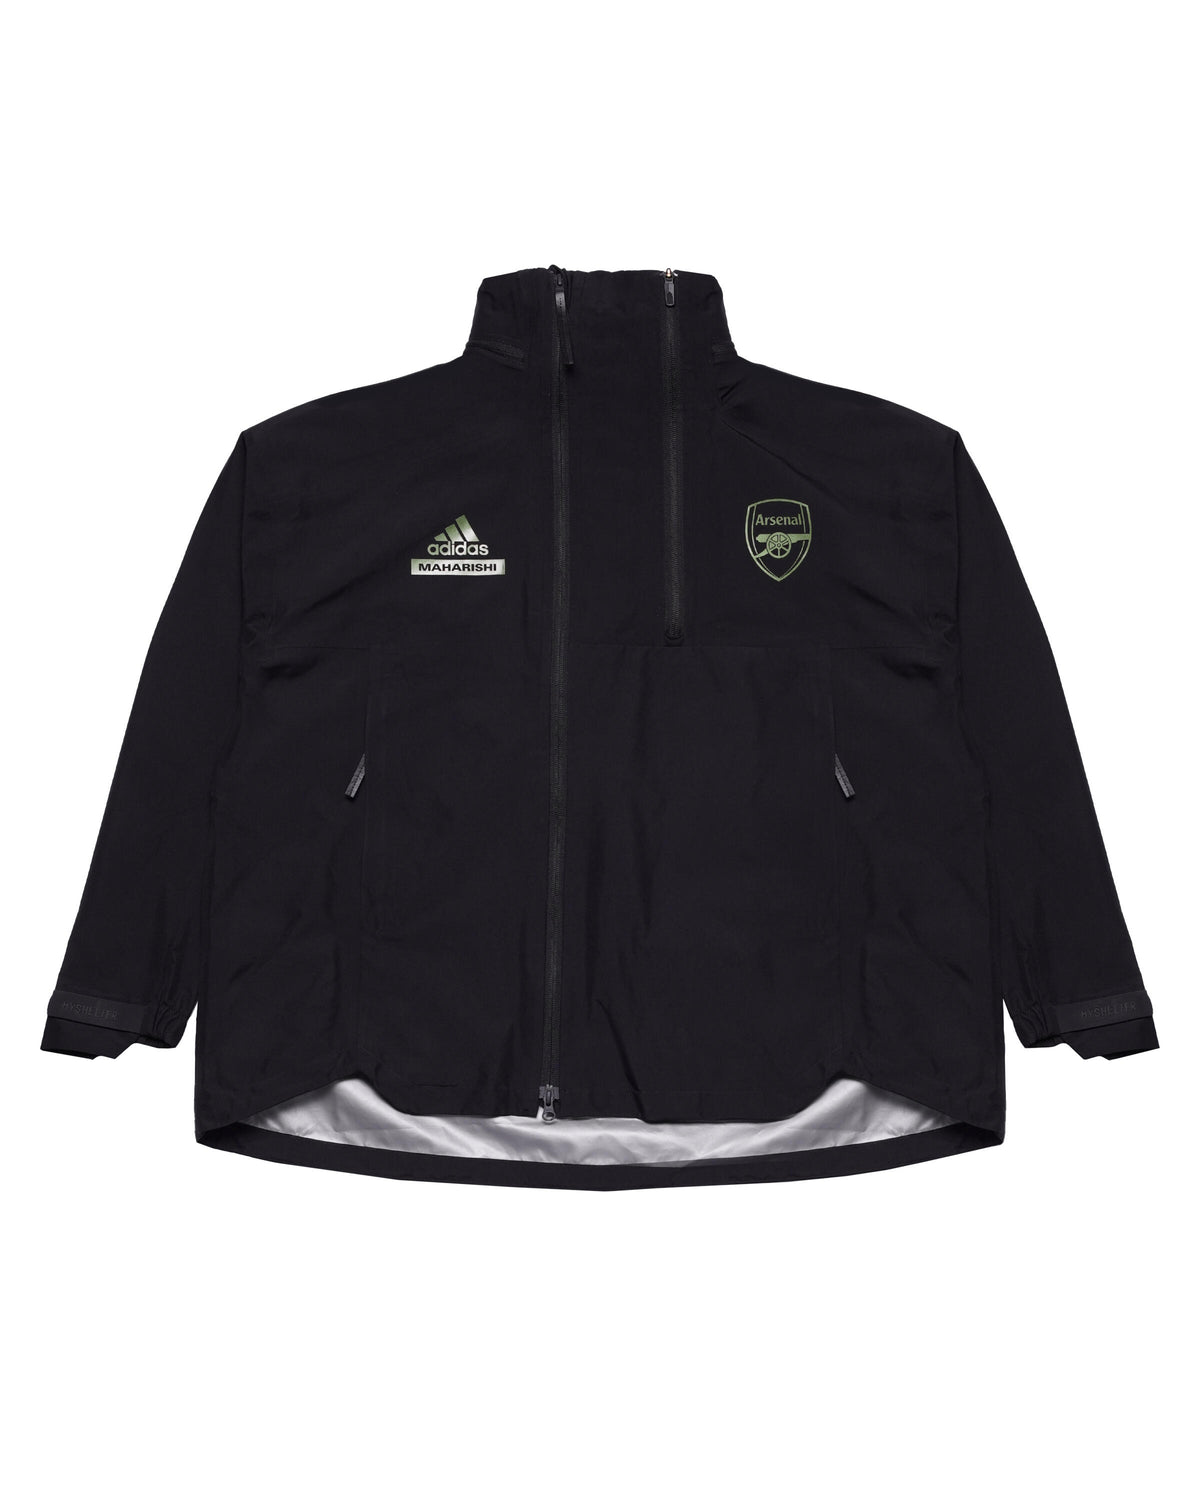 Adidas Originals x Arsenal FC X Maharishi Gore-Tex Jacket